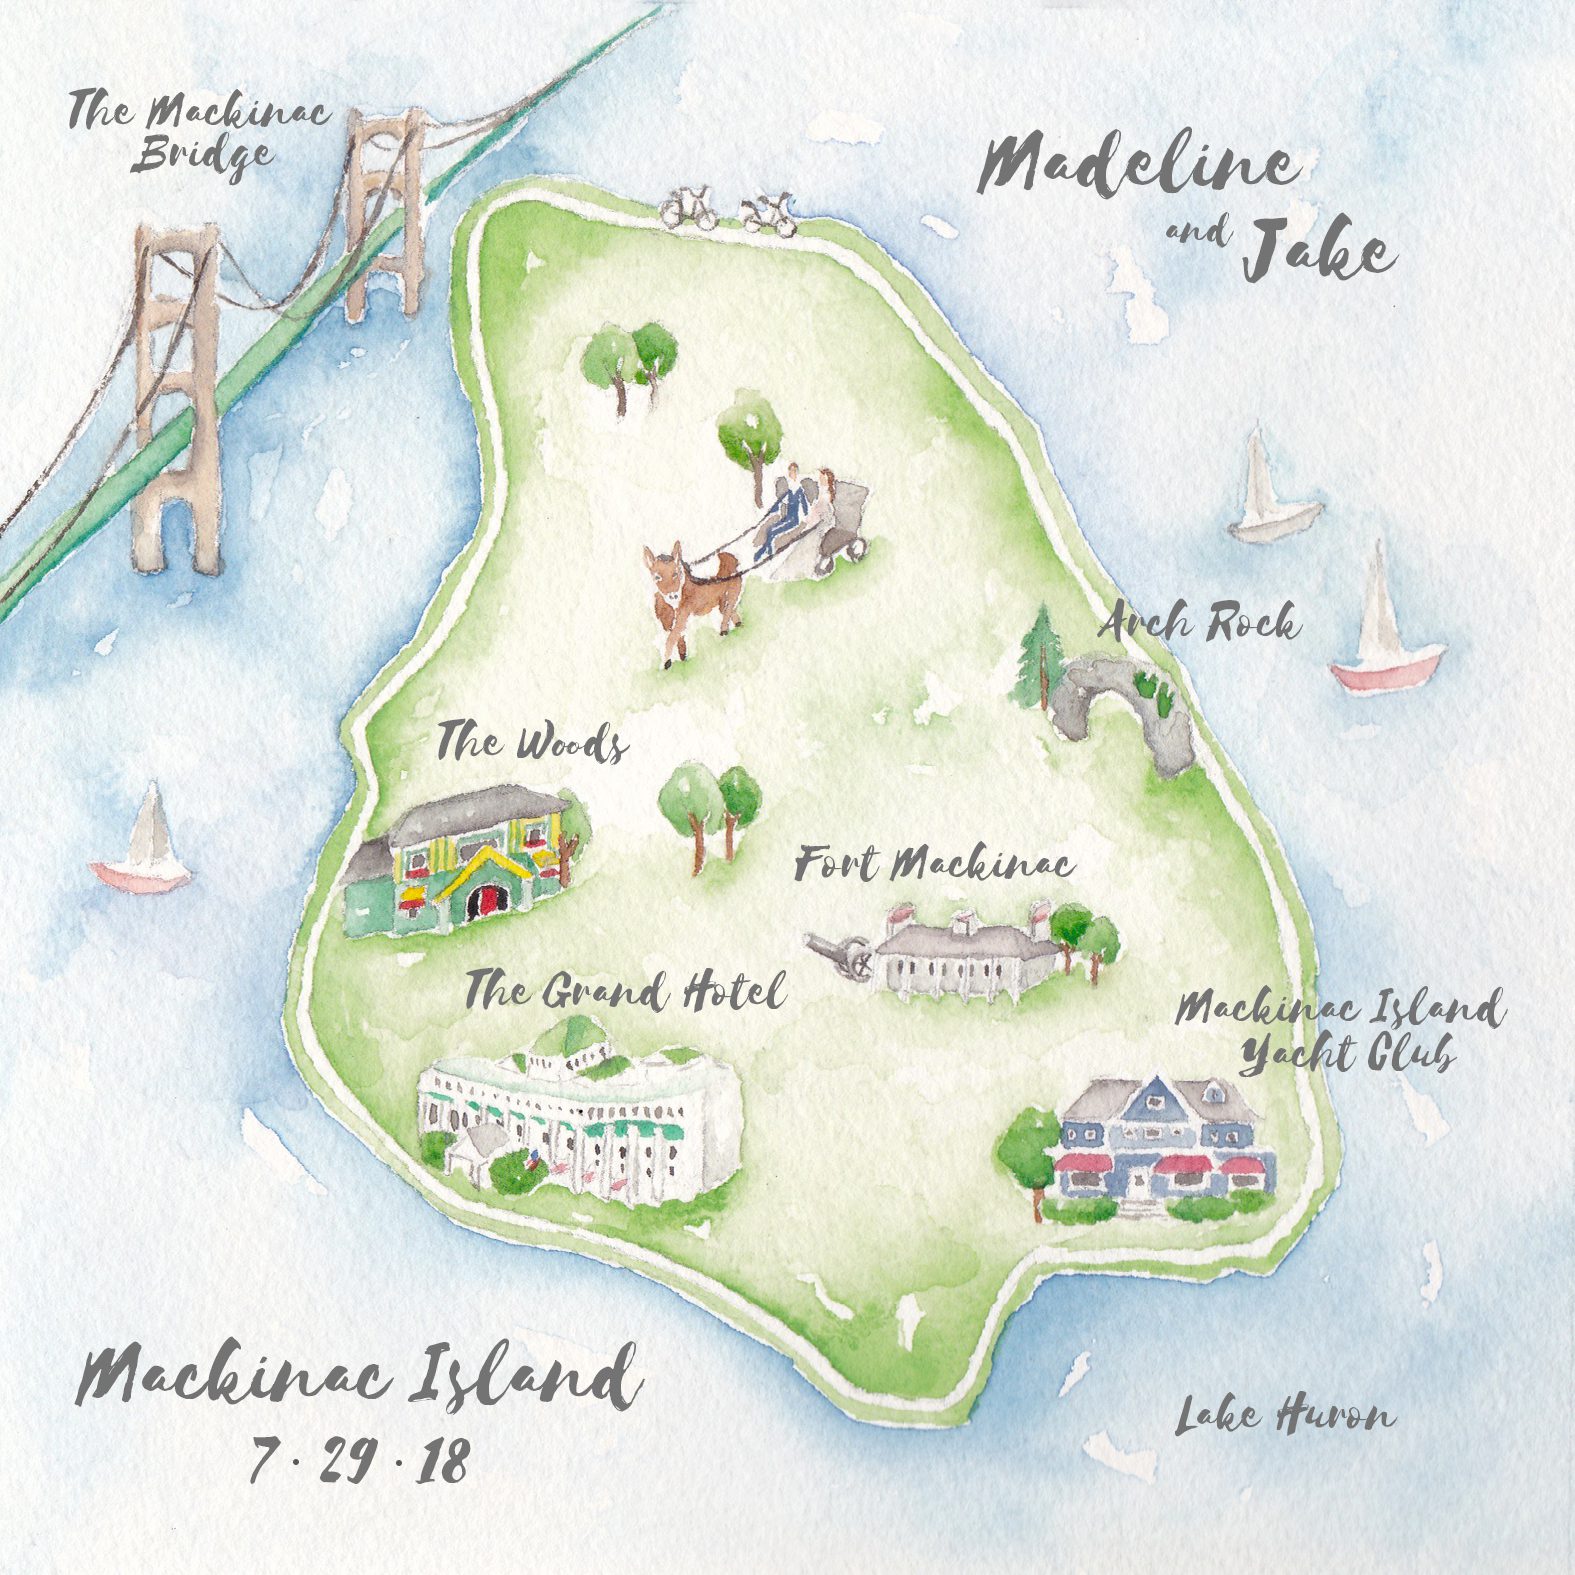 mackinac island wedding map